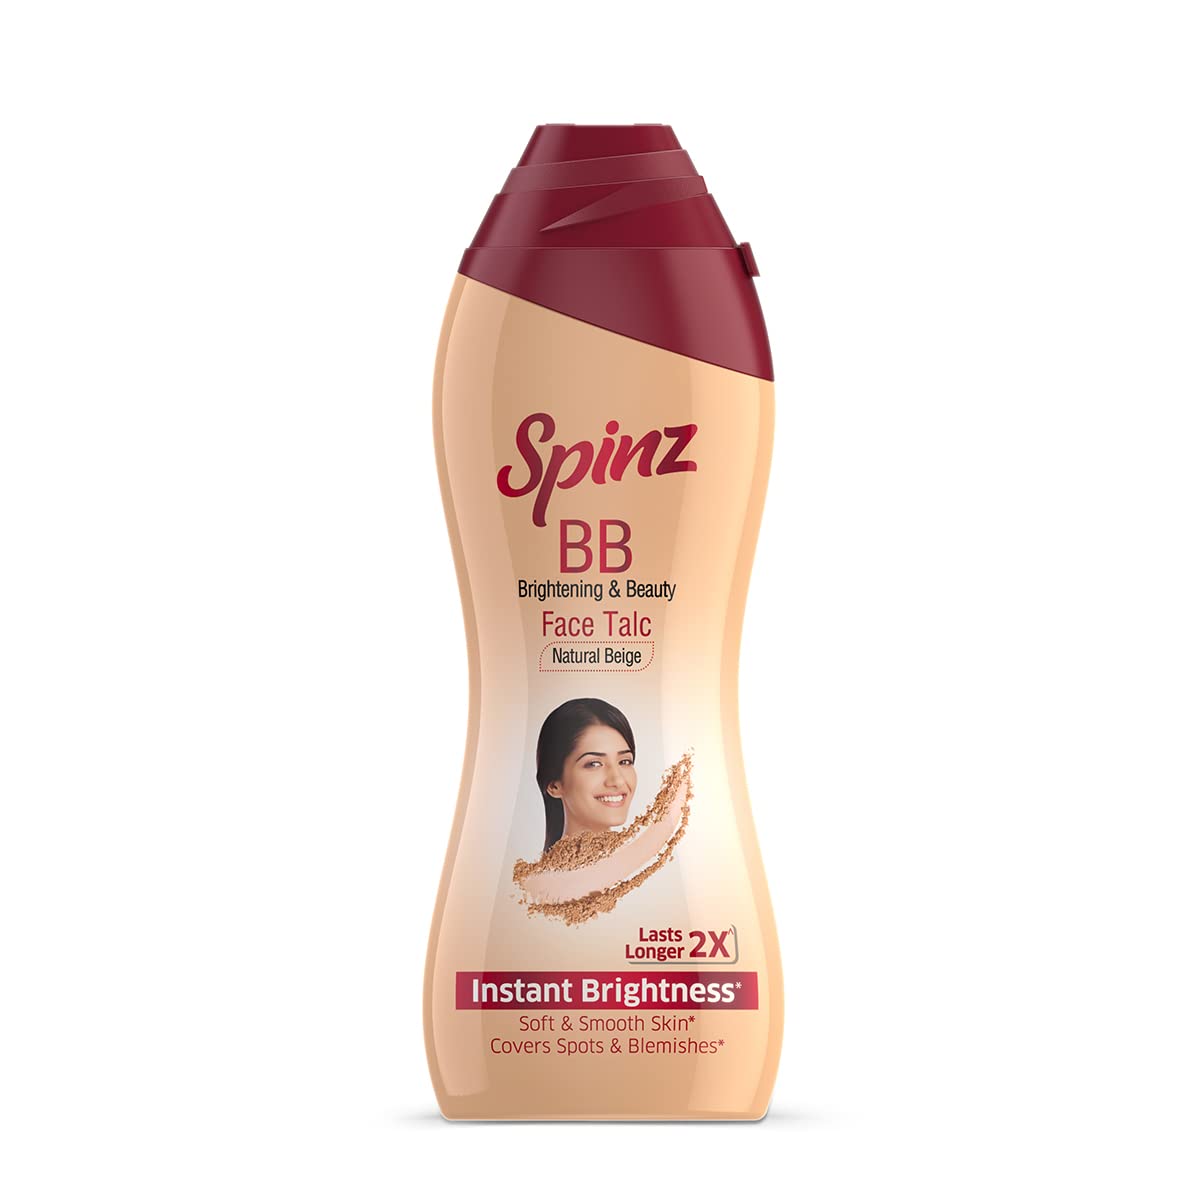 Spinz BB Brightening & Beauty Face Talc Natural Beige -35gm